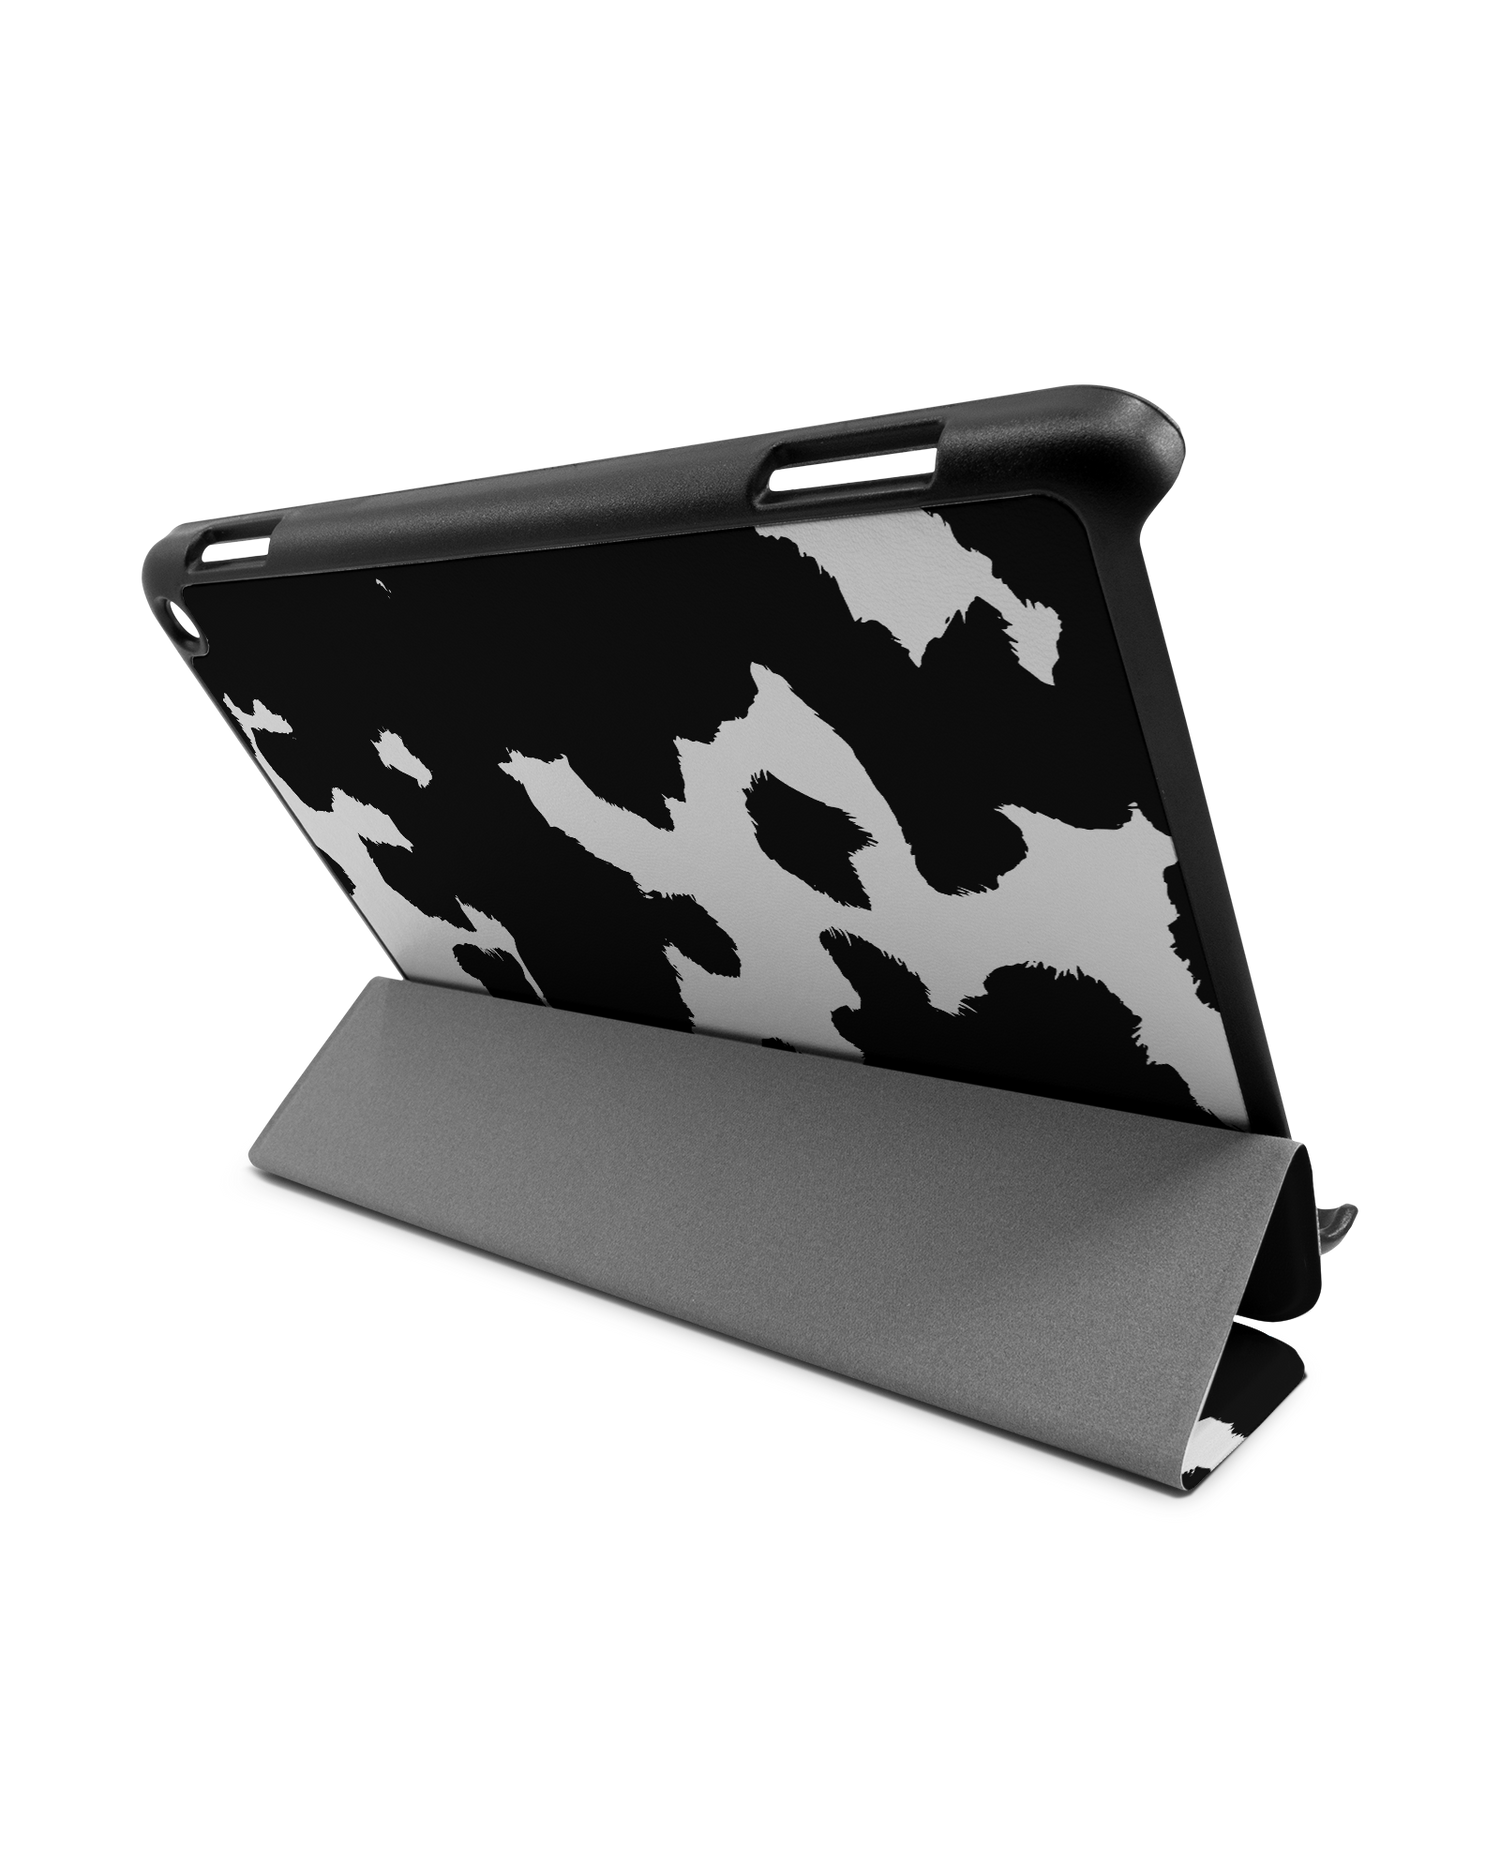 Cow Print Tablet Smart Case für Amazon Fire HD 8 (2022), Amazon Fire HD 8 Plus (2022), Amazon Fire HD 8 (2020), Amazon Fire HD 8 Plus (2020): Aufgestellt im Querformat